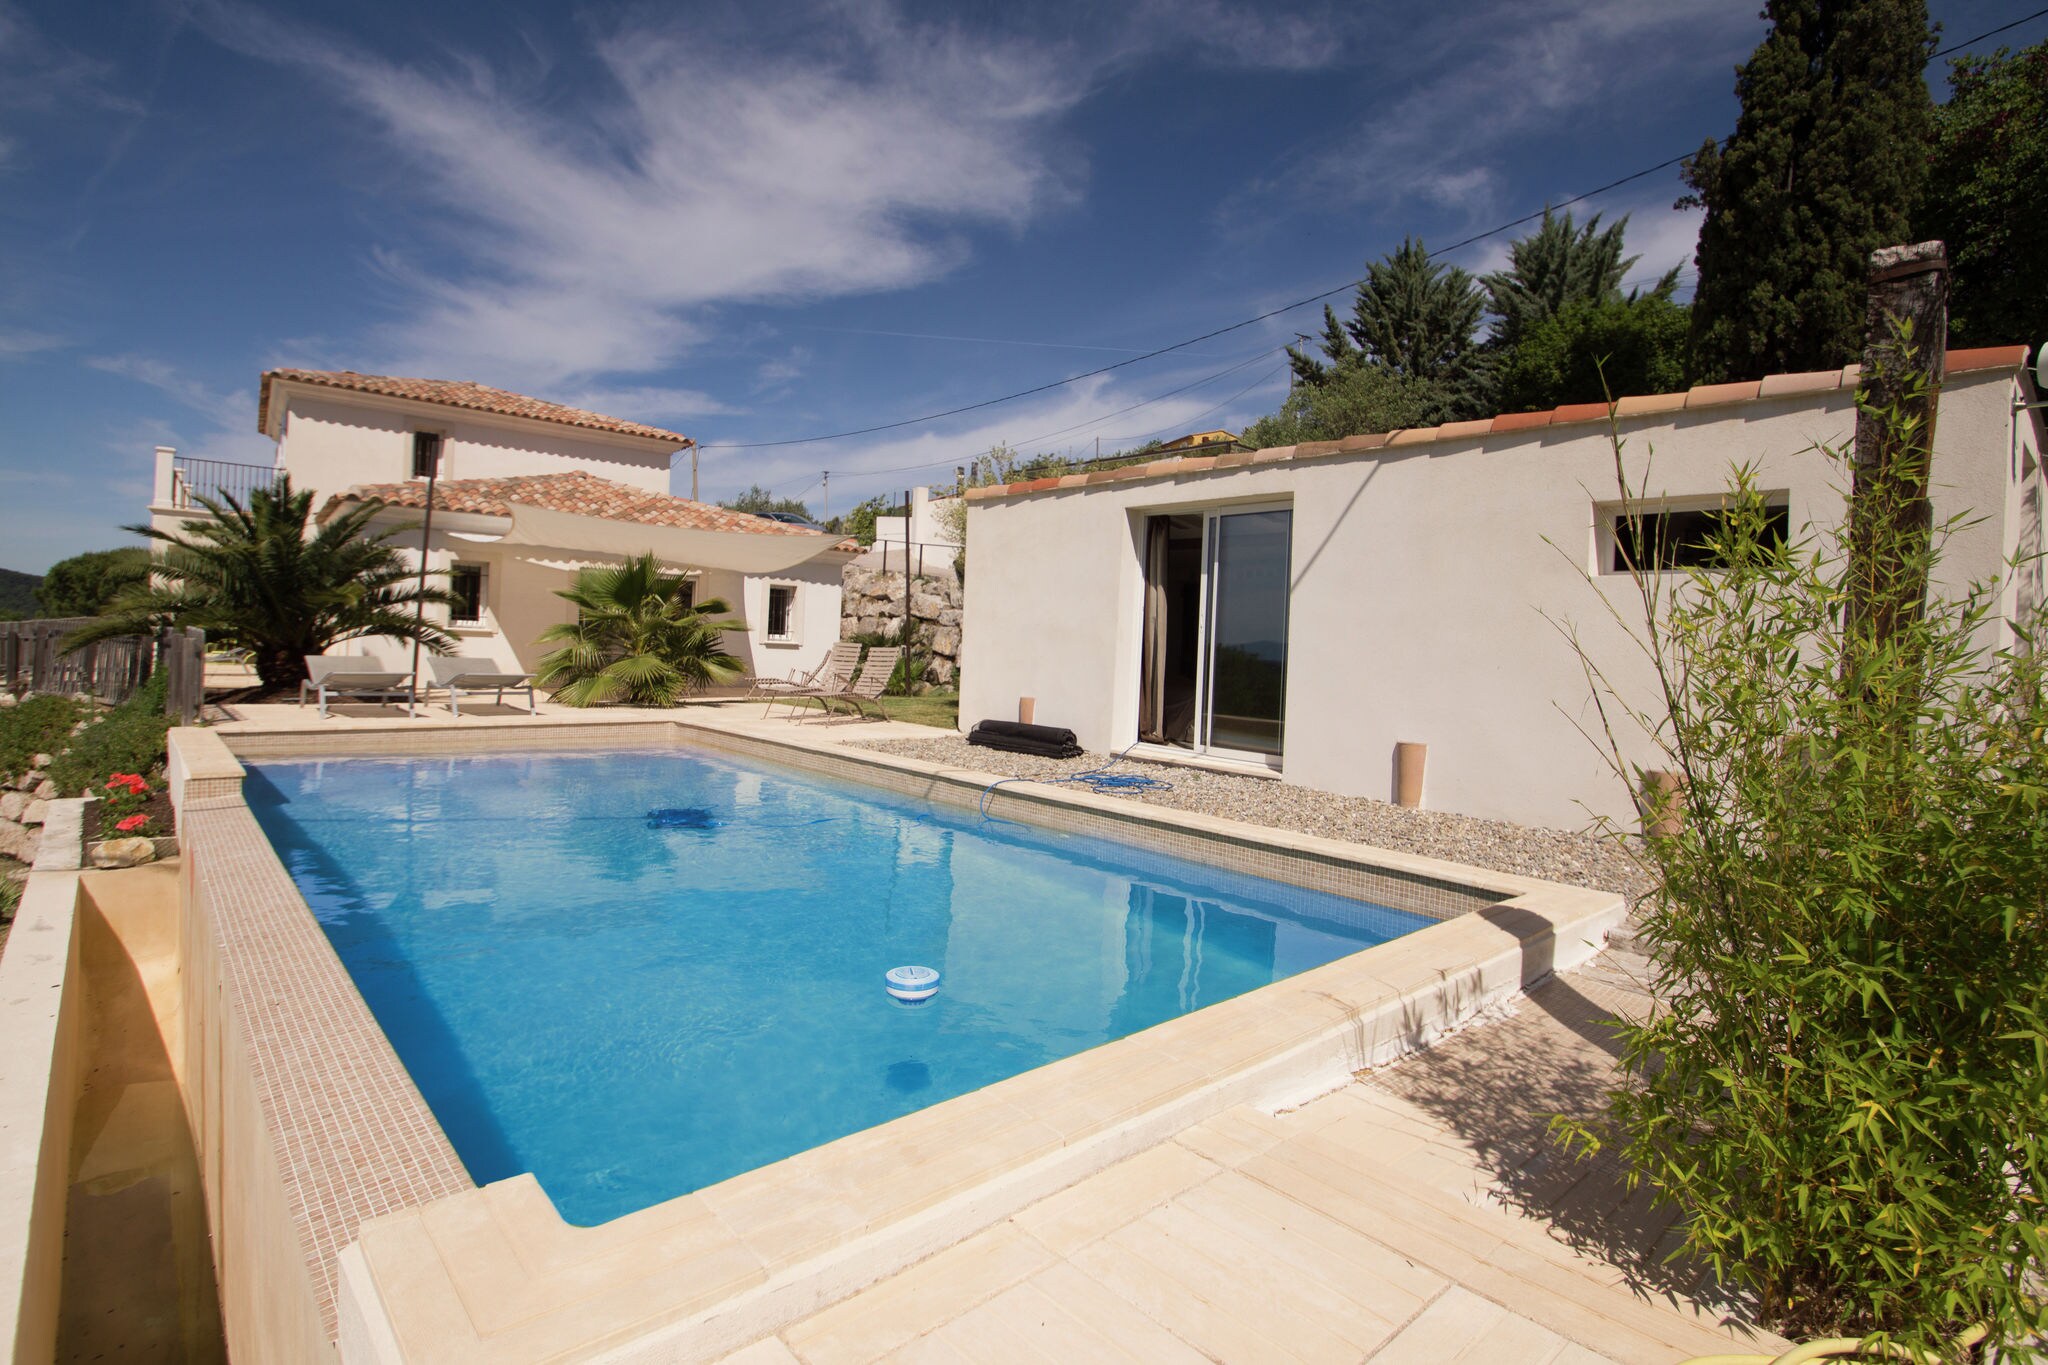 Stijlvolle villa in Draguignan met privé-zwembad en fraai uitzicht.